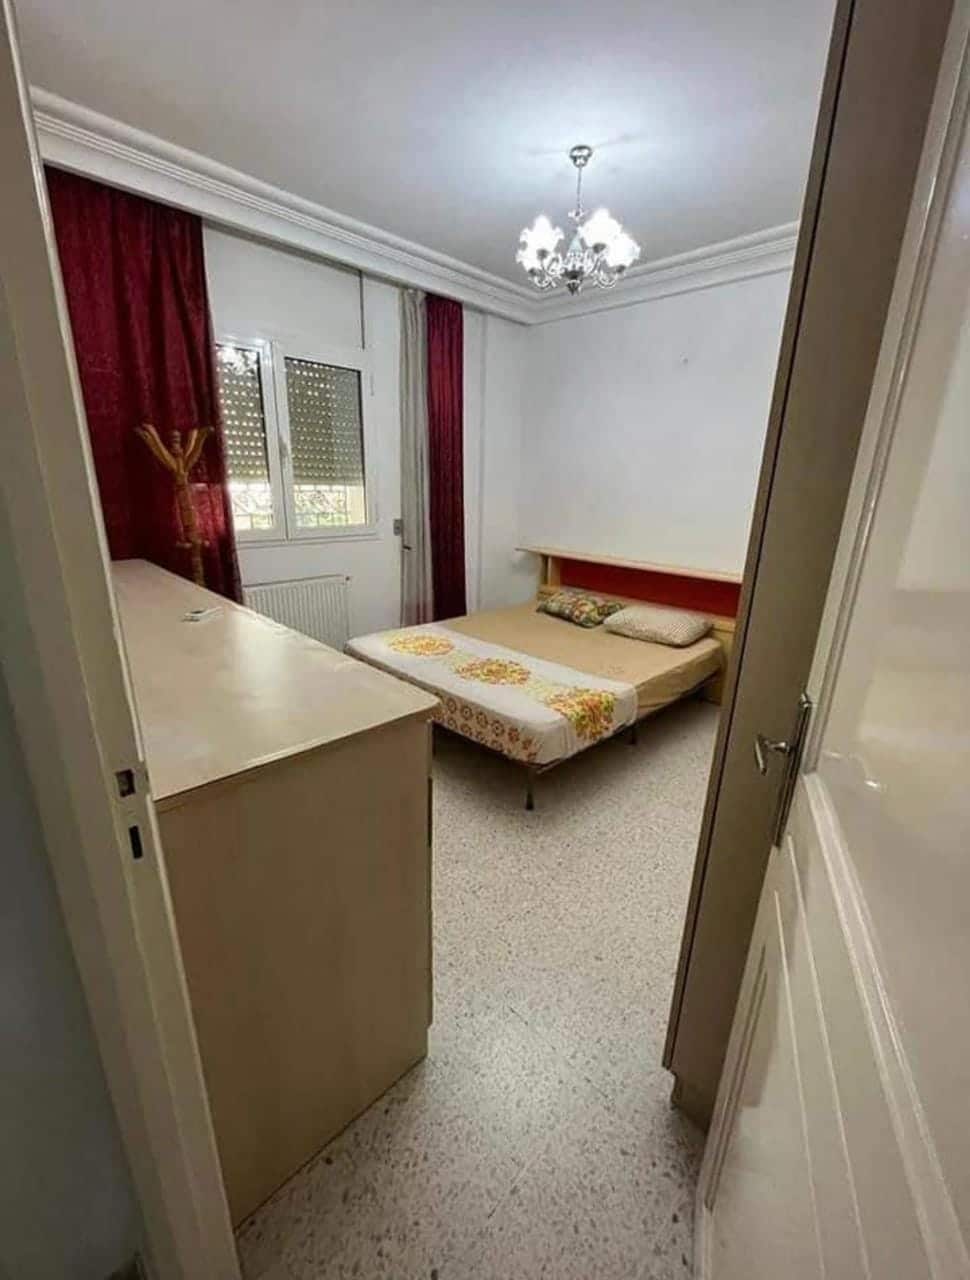 "#LocationMaison - House for rent Bien immobilier" "Portes ouvertes" Jardins El-Aouina